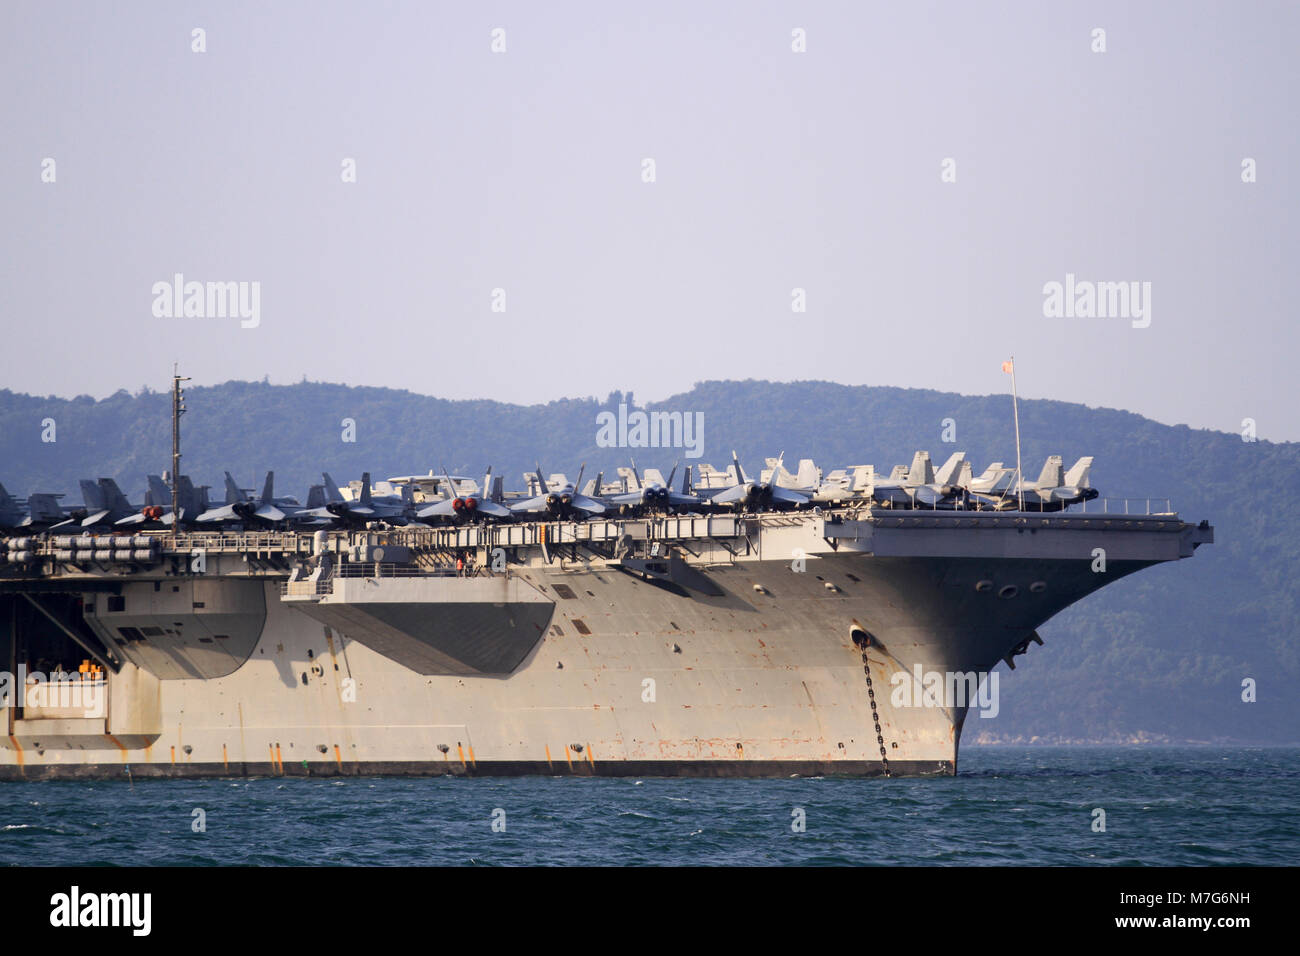 Les États-Unis, porte-avions USS Carl Vinson, ancré au large de la côte au port Sa Tien le 5 mars 2018 à Danang, Vietnam. Banque D'Images